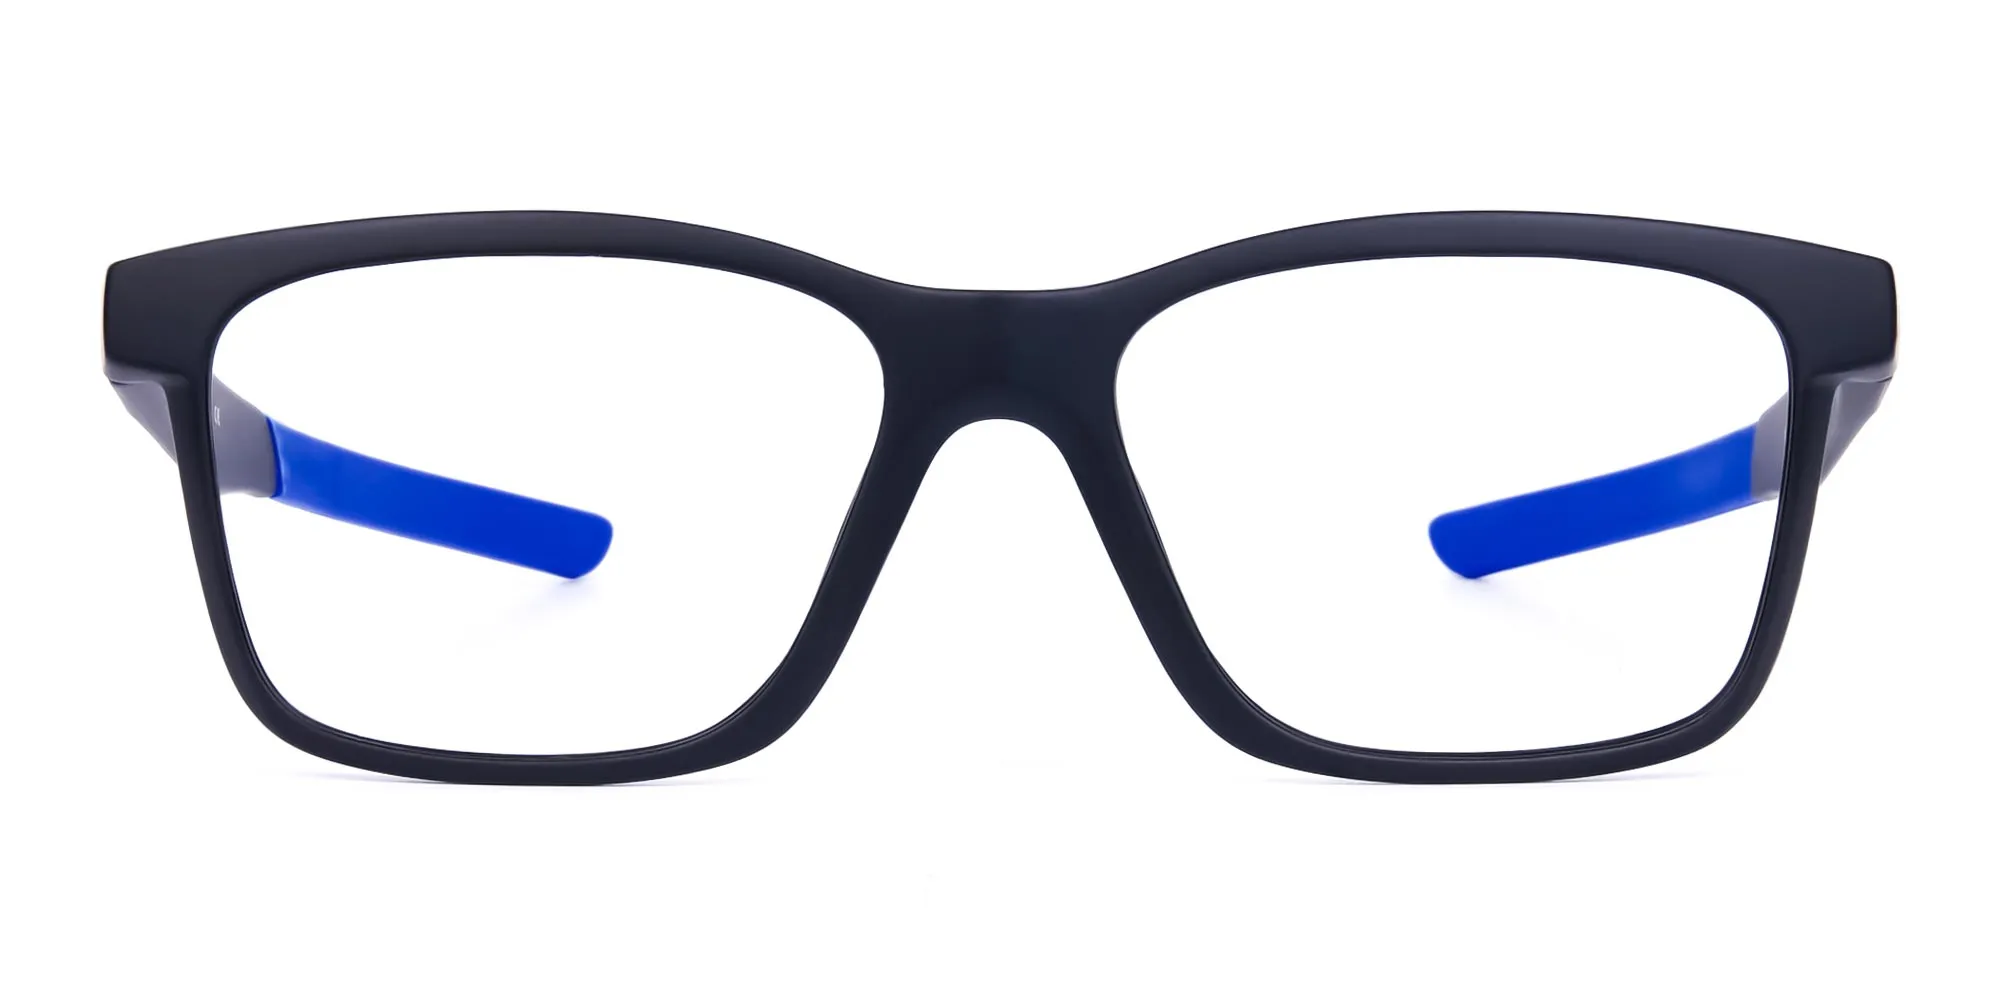 Blue & Black Running Glasses For Men 